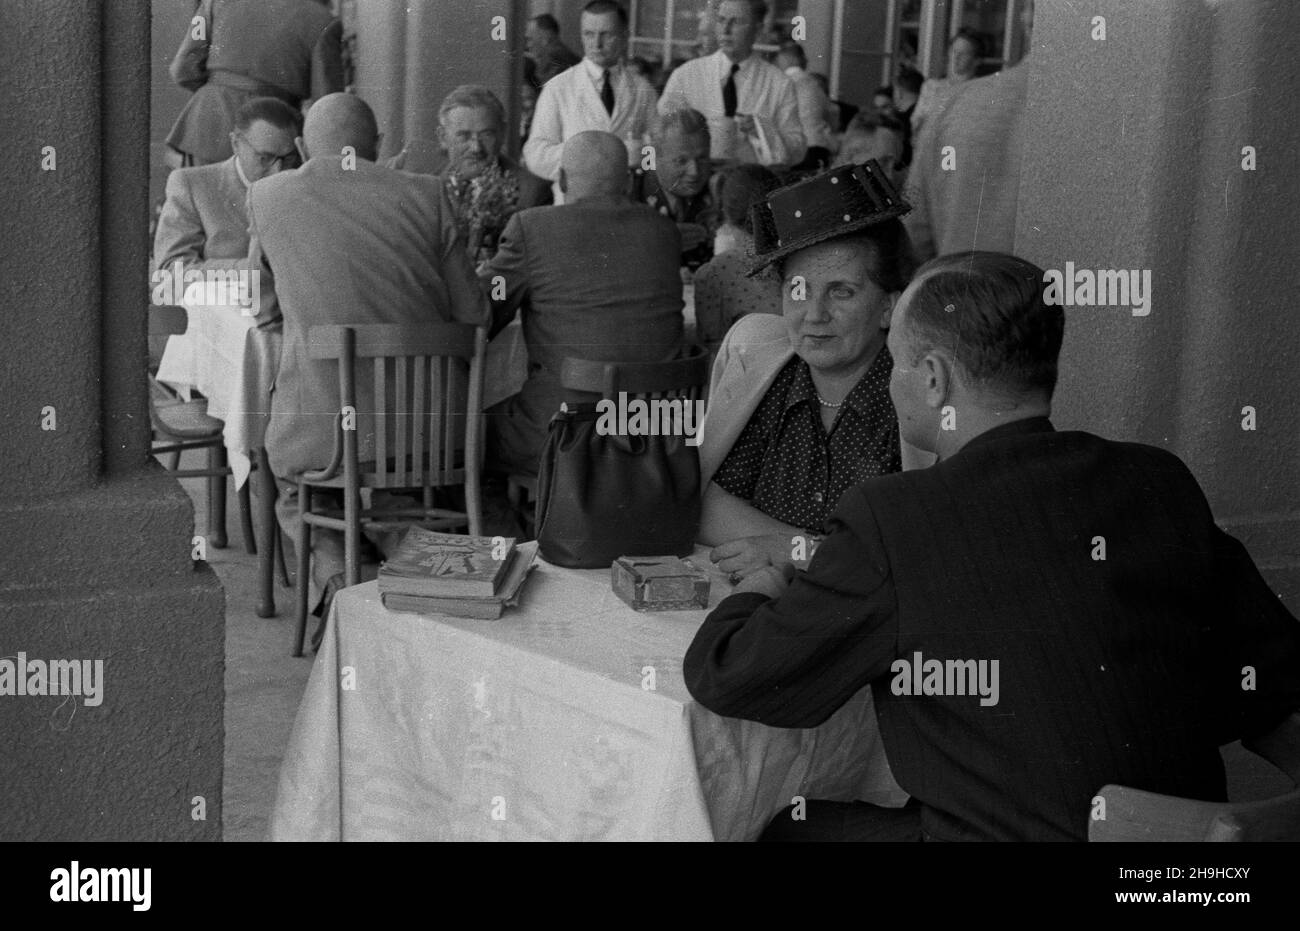 Wroc³aw, 1948-07-21. Wystawa Ziem Odzyskanych (21 lipca-31 paŸdziernika). Nz. na terenach wystawowych mo¿na by³o zjeœæ i napiæ siê w specjalnie urz¹dzonych lokalach gastronomicznych.  mw  PAP/Jerzy Baranowski          Wroclaw, July 21, 1948. The Exhibition of the Regained Territories (July 21-October 31). Pictured: small restaurants offered food and drink at the exhibition site.  mw  PAP/Baranowski Stock Photo